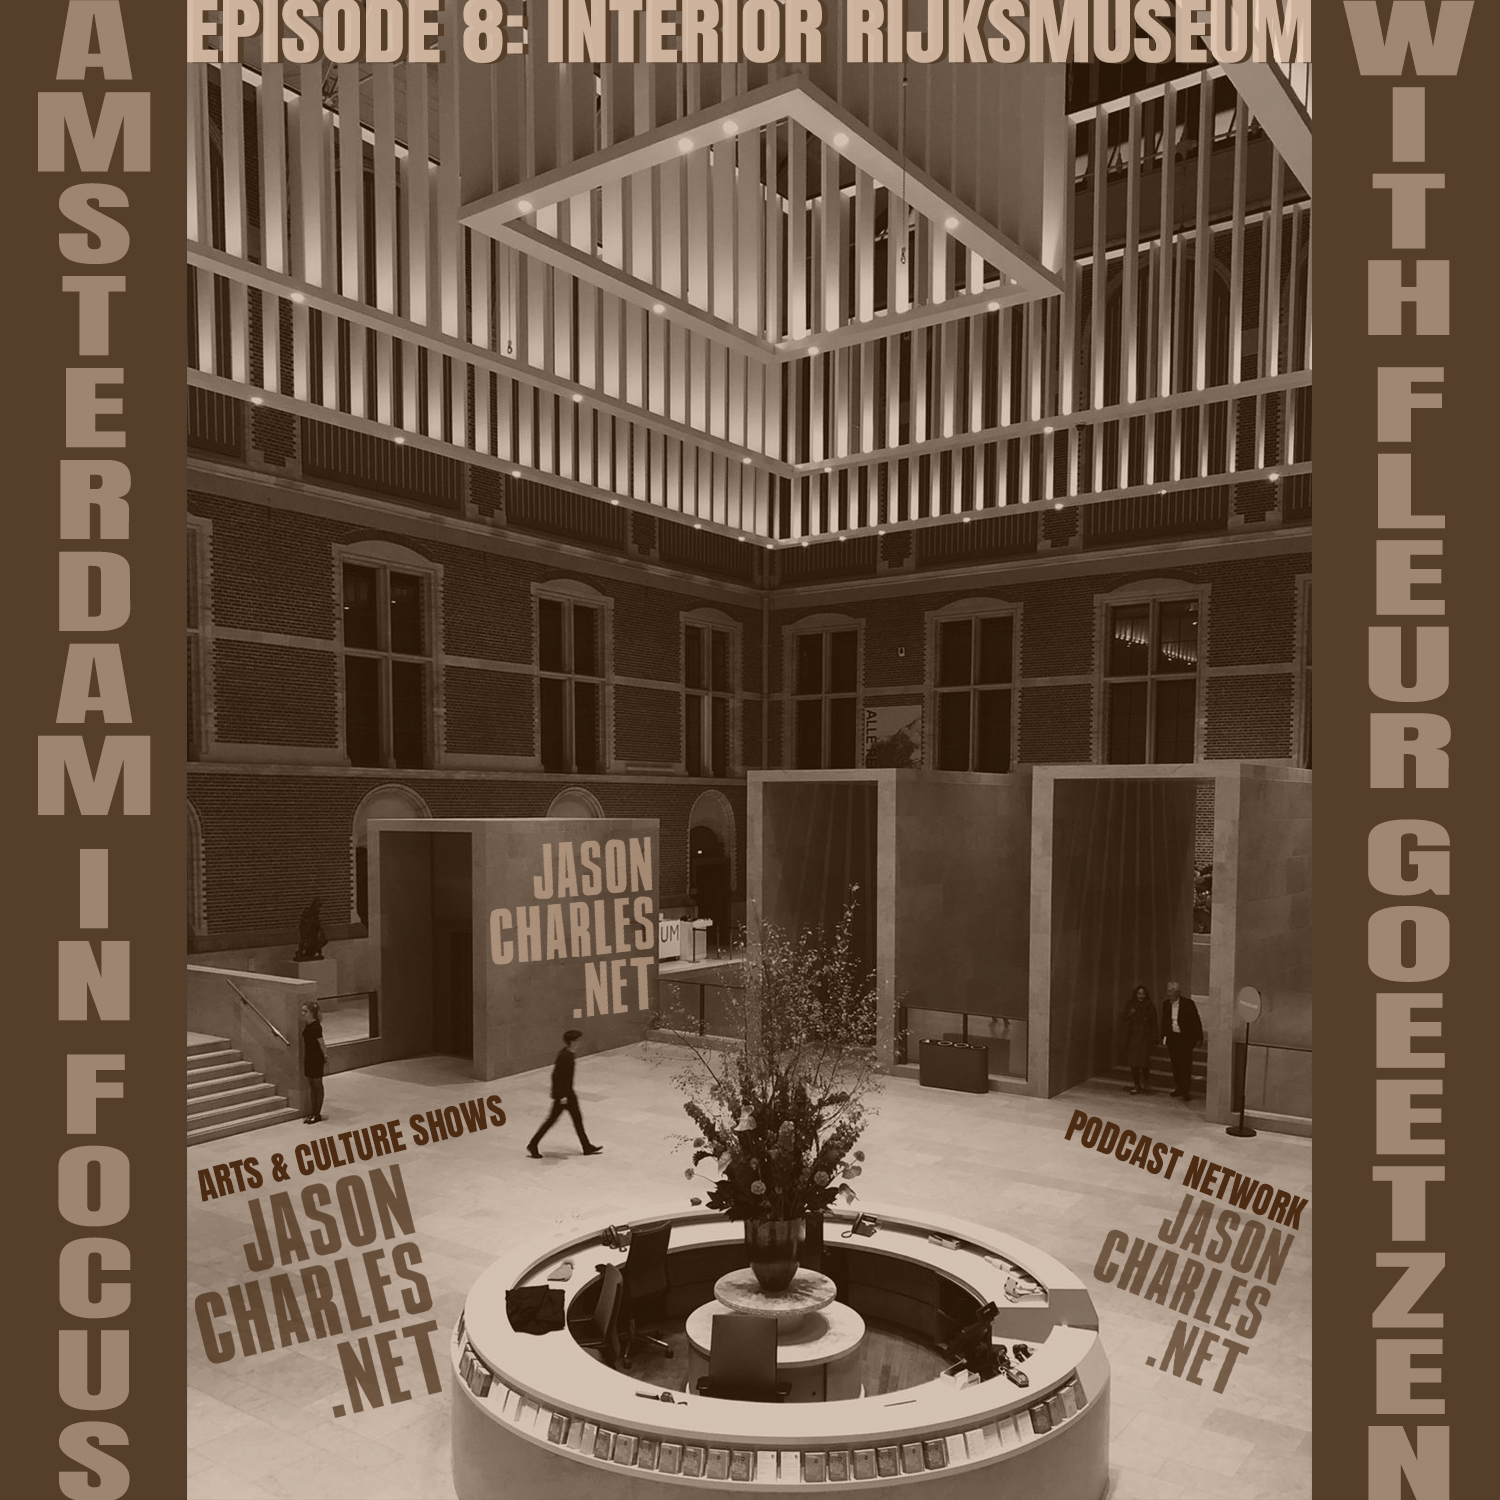 AMSTERDAM IN FOCUS Episode 8 Interior RijksMuseum